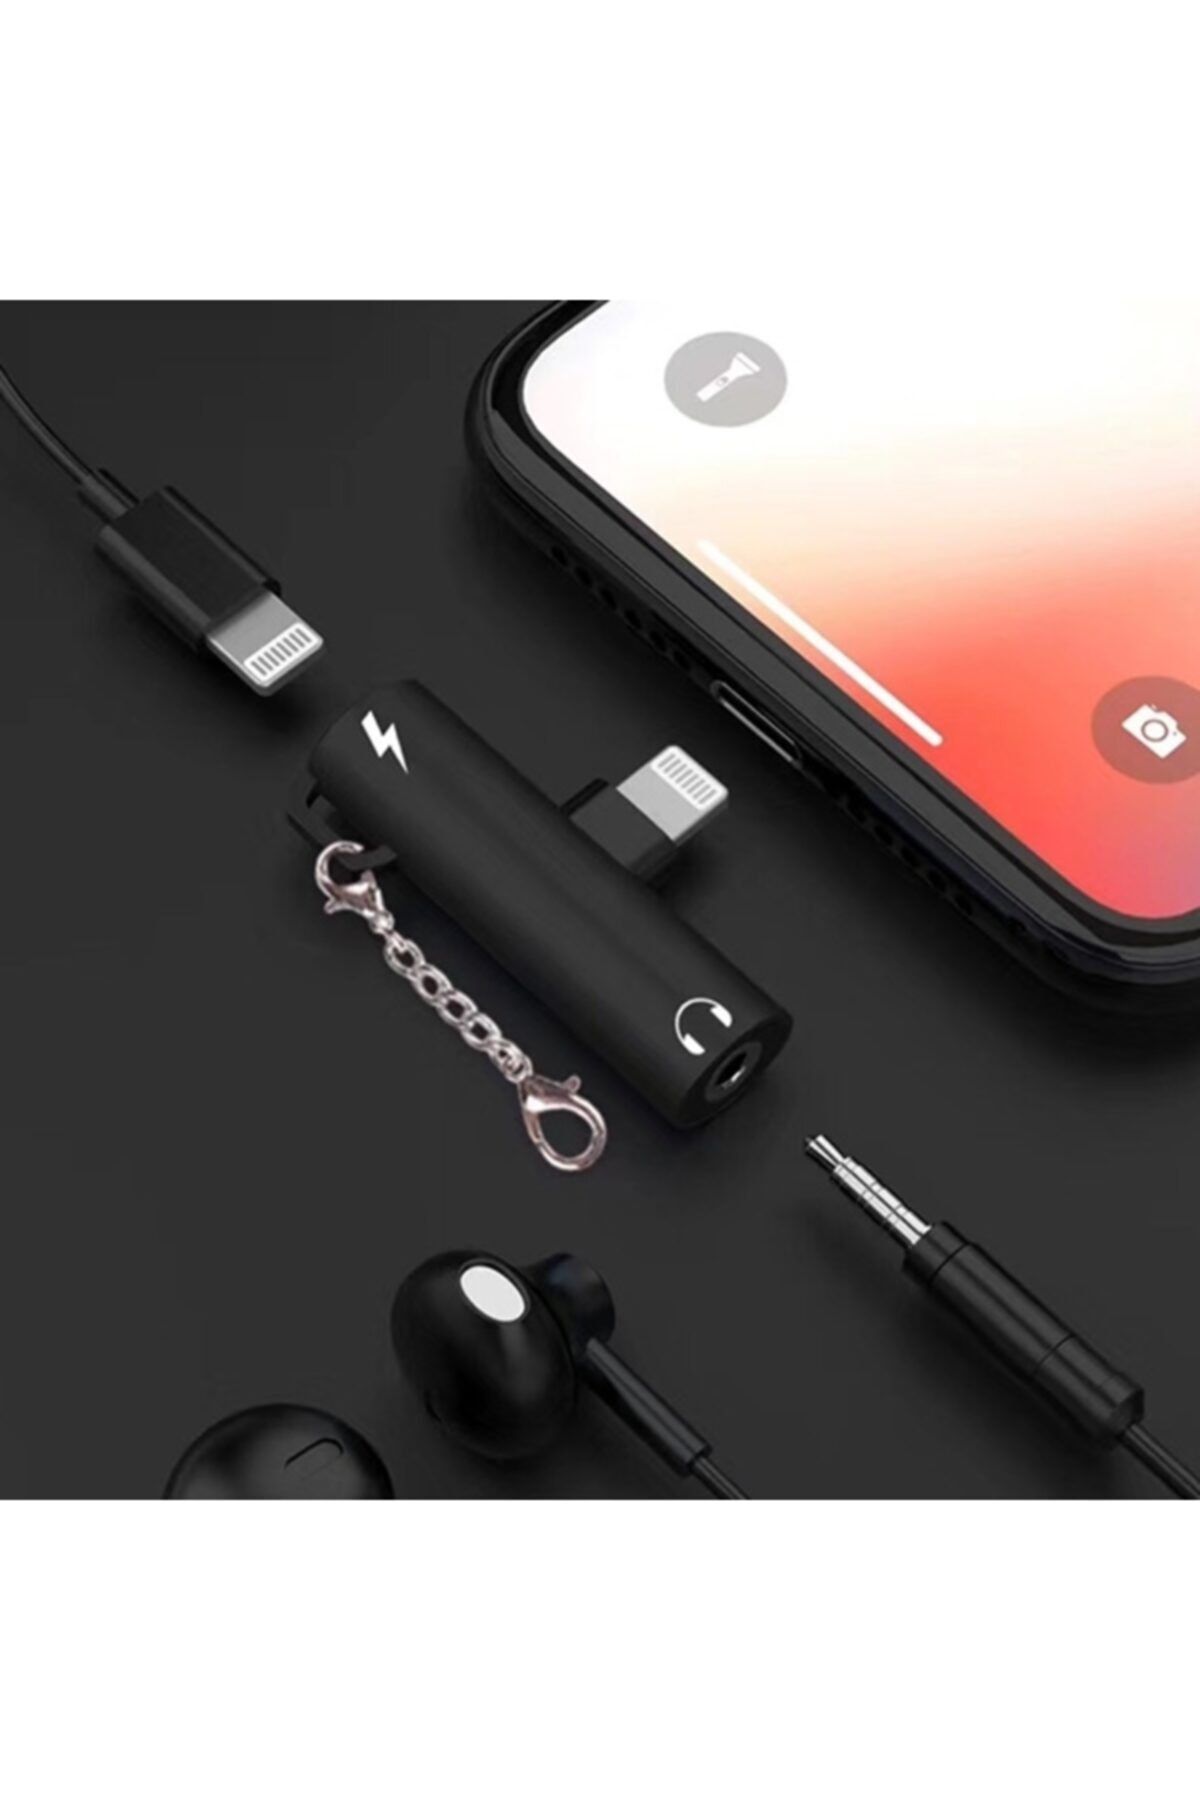 CepEvi Iphone Lightning Uyumlu 3.5mm Kulaklık Şarj Dönüştürücü Başlık Adaptör